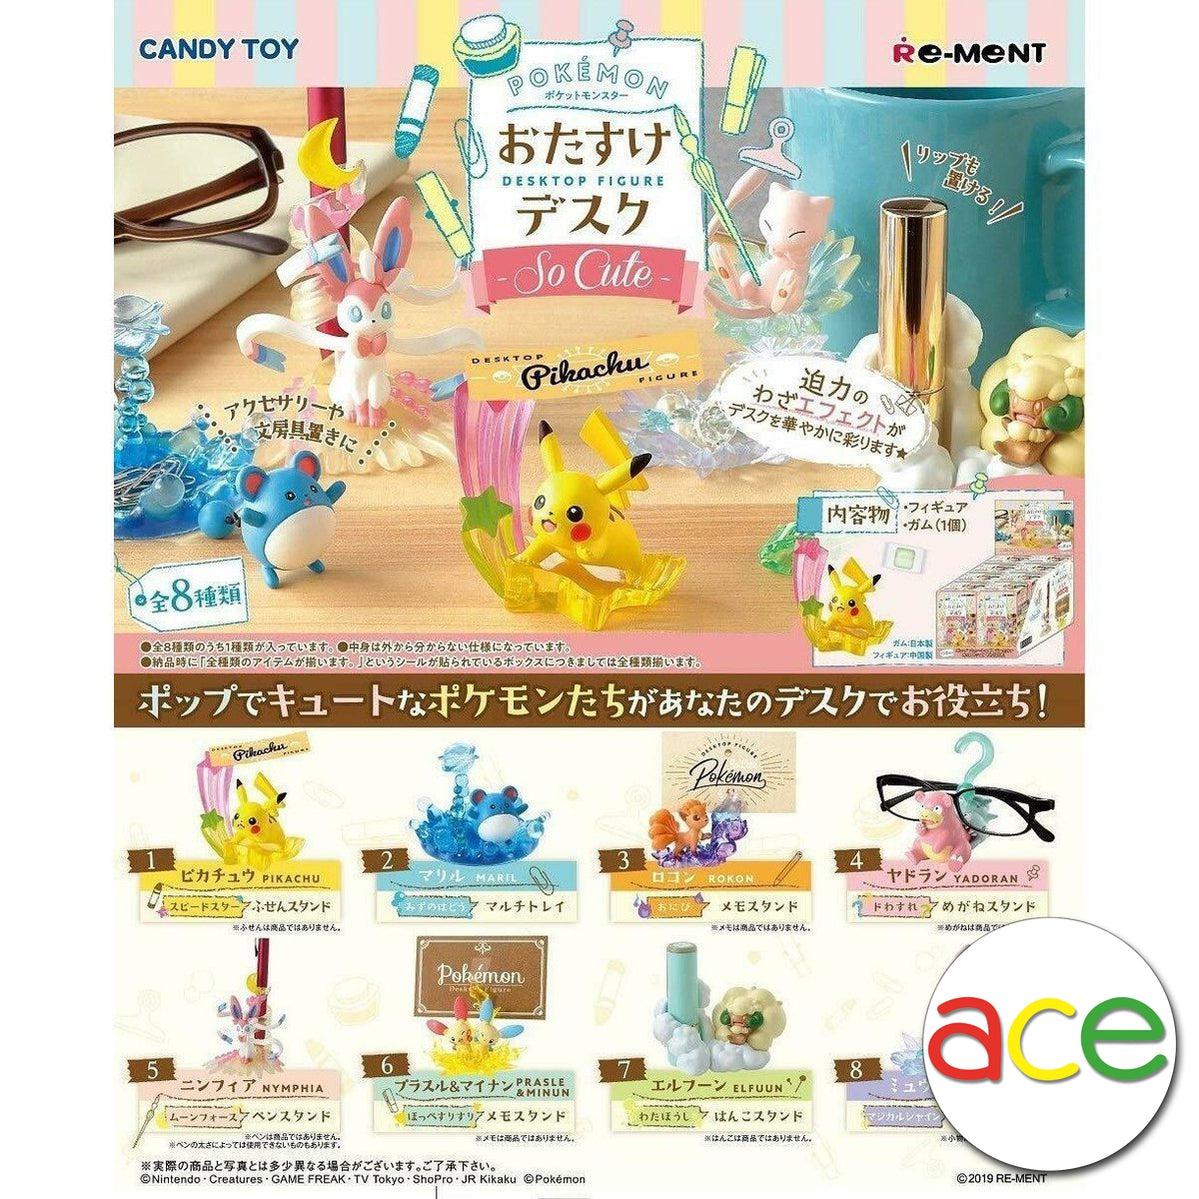 Re-Ment Pokemon Desktop Figure -So Cute-Single Box-Random-Re-Ment-Ace Cards & Collectibles